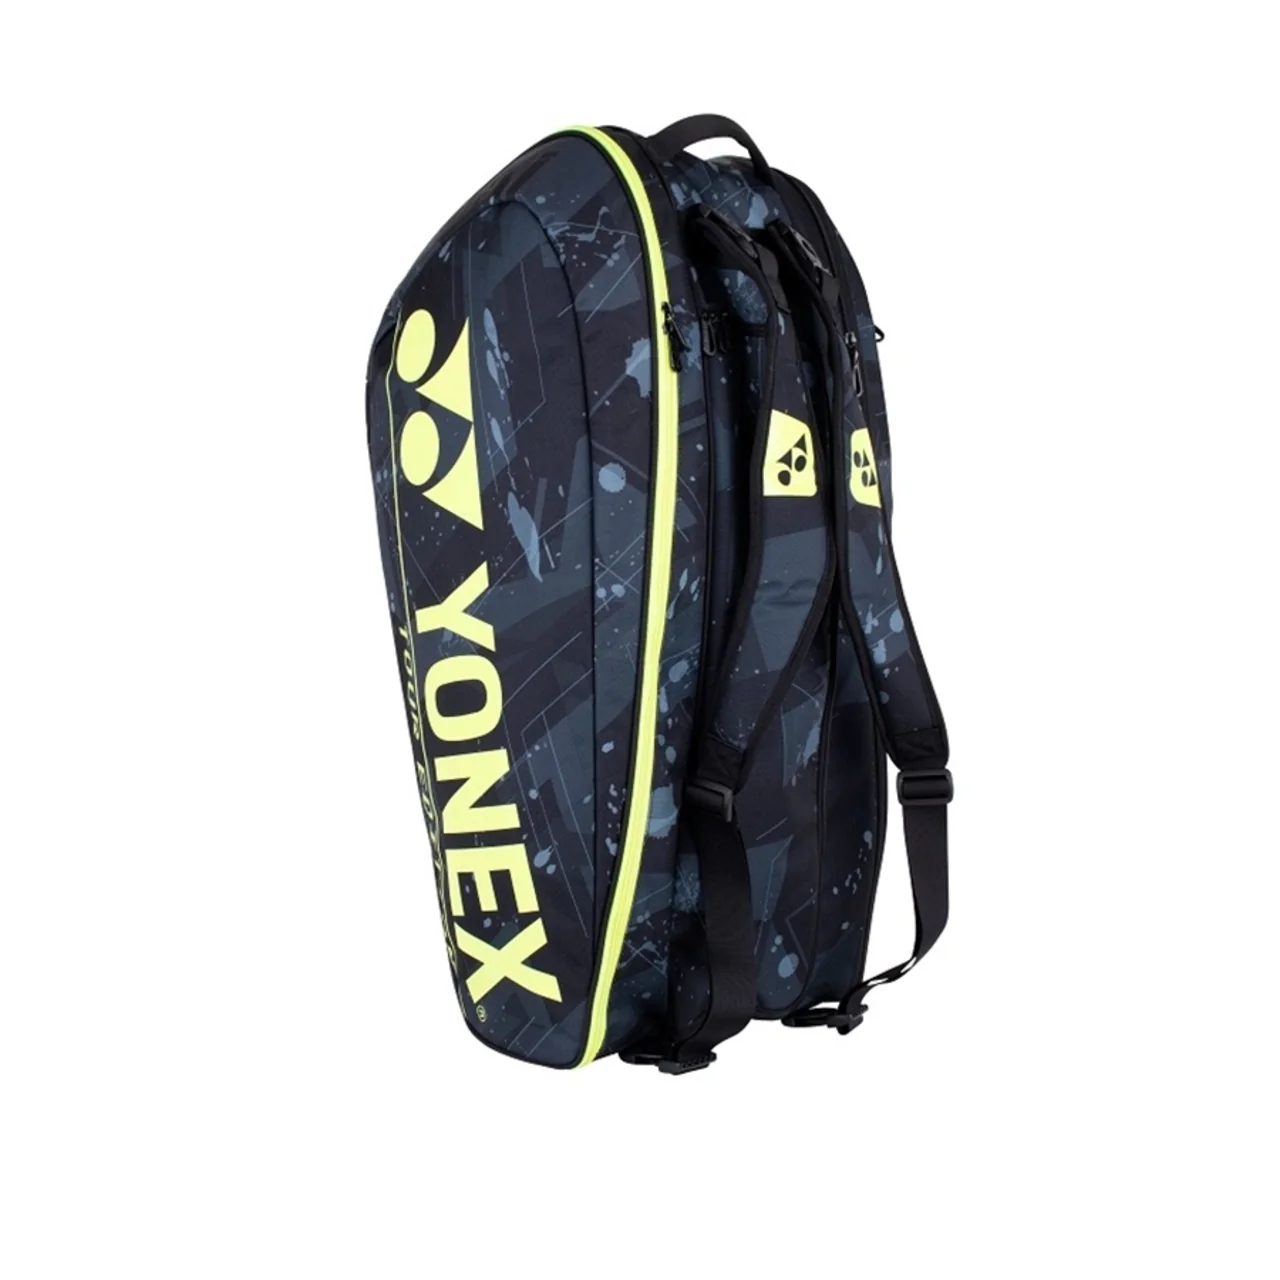 Yonex Pro Bag x9 Black/Yellow 2021